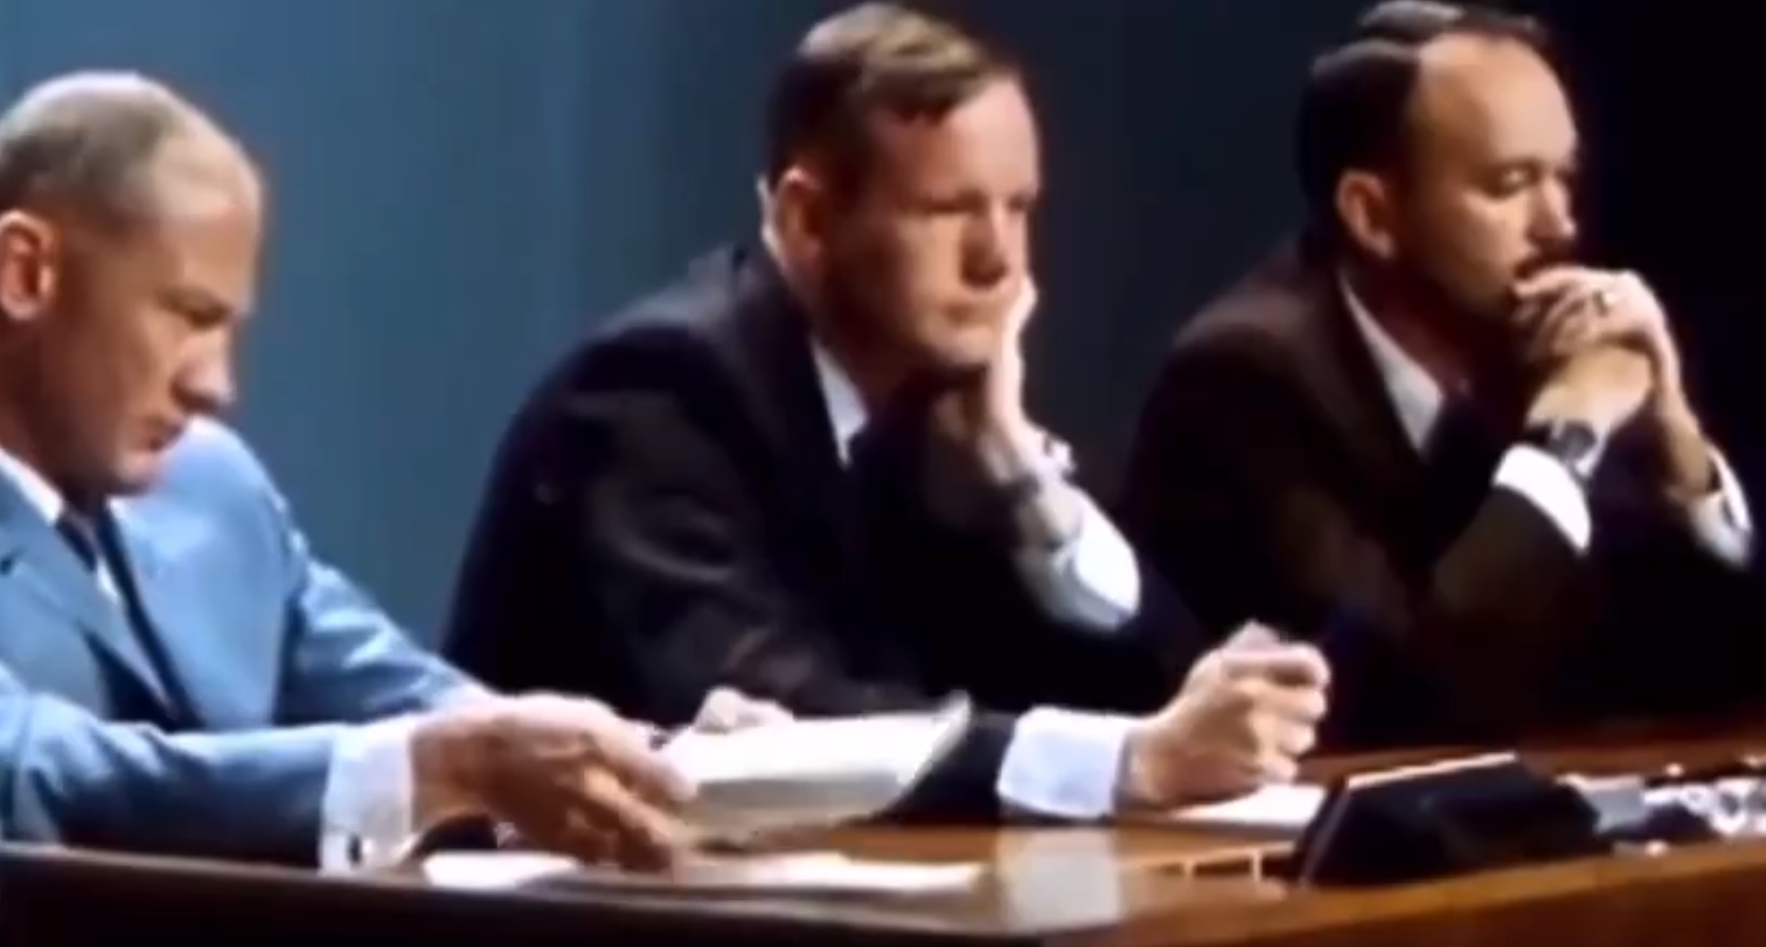 20 juillet 1969 : la conférence de presse lunaire des 3 astronautes